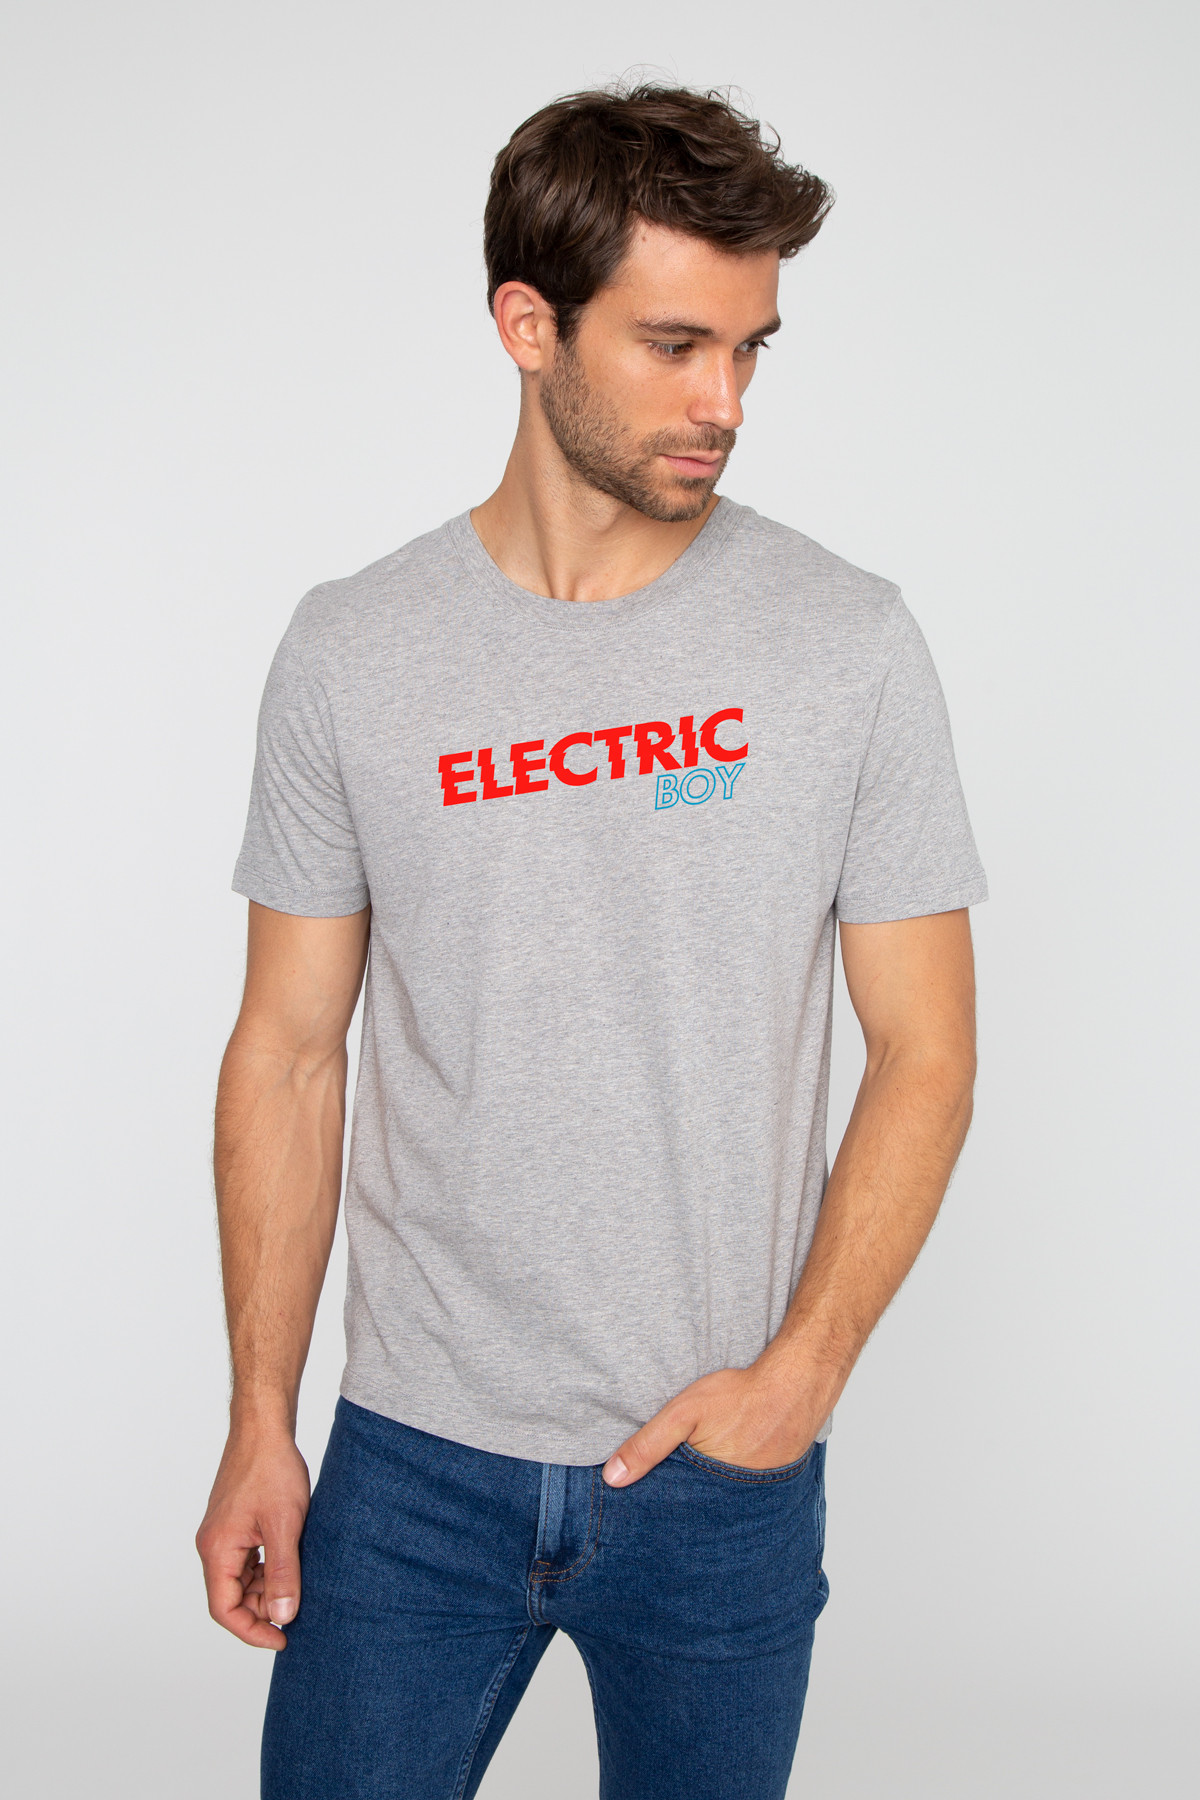 Tshirt ELECTRIC BOY French Disorder